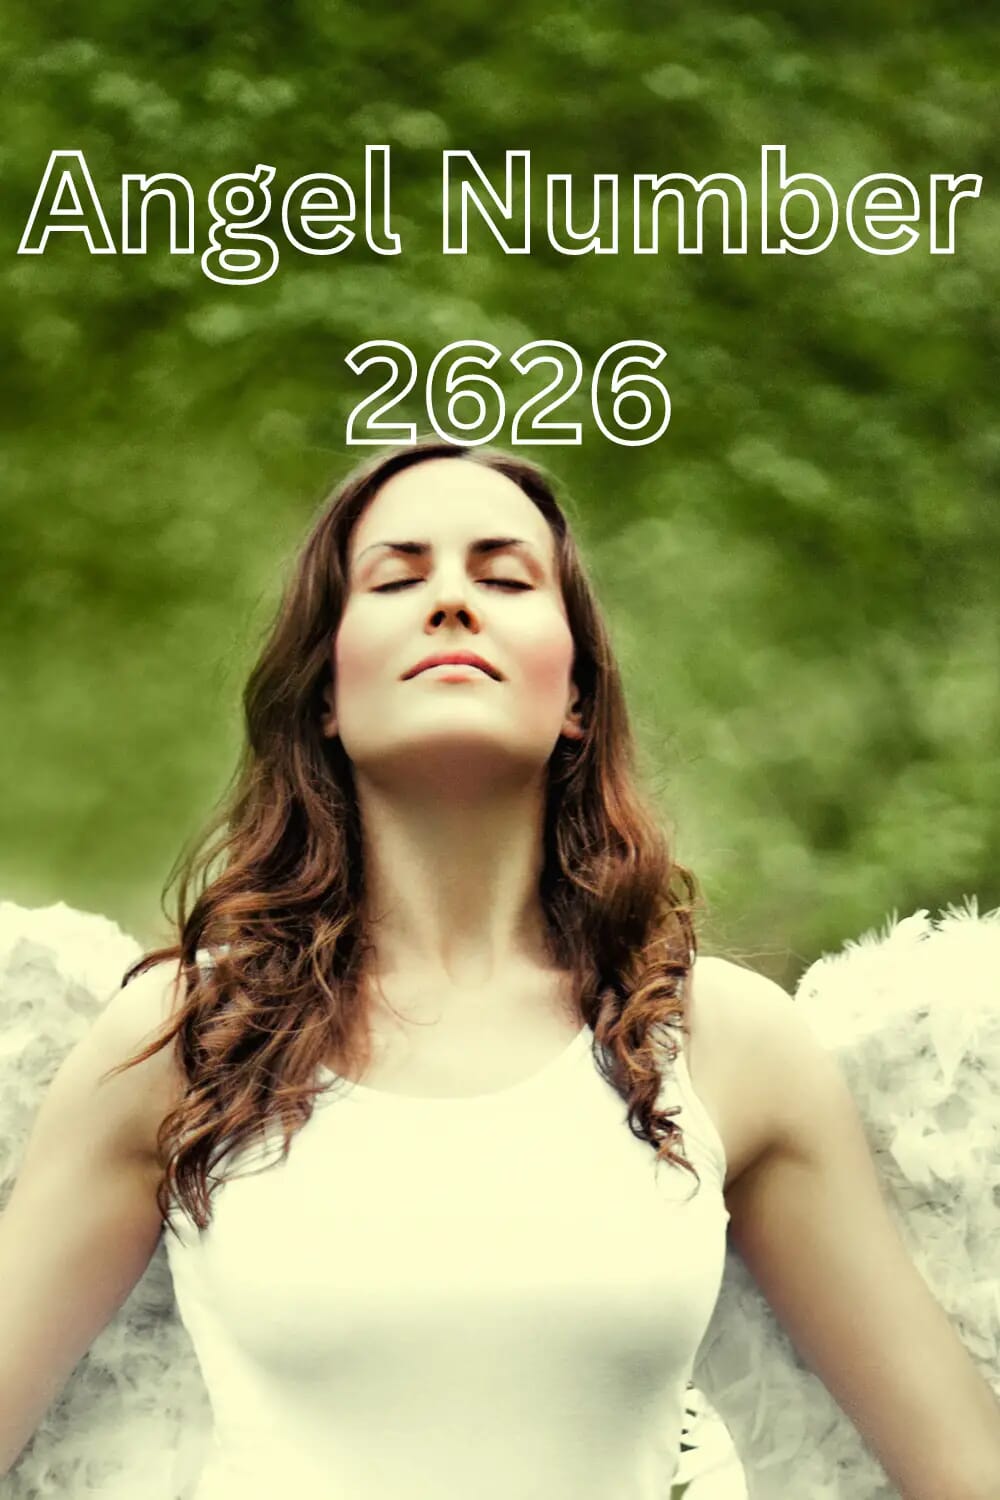 Angel number 2626